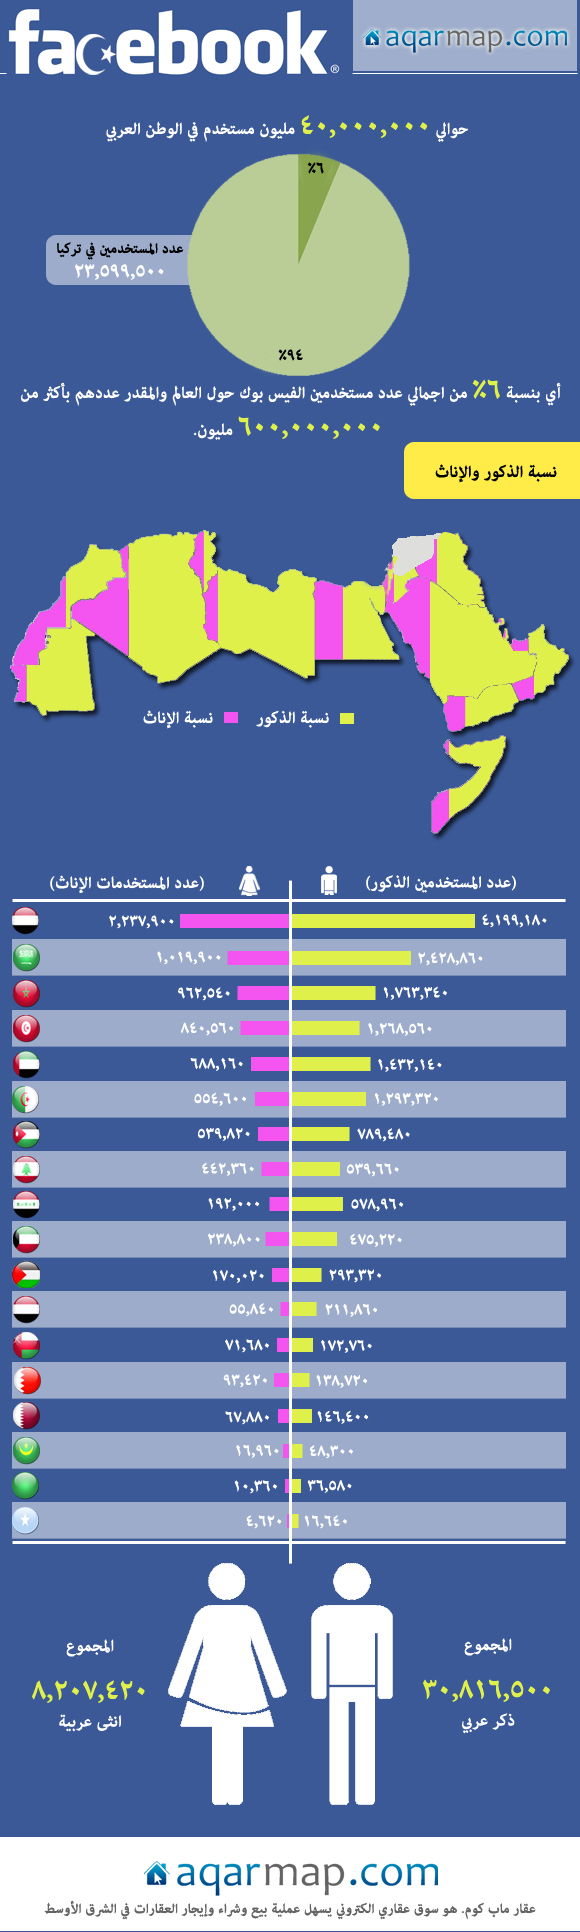 fbinfo7 معلومات بيانية : عدد الذكور والإناث على الفيس بوك في العالم العربي